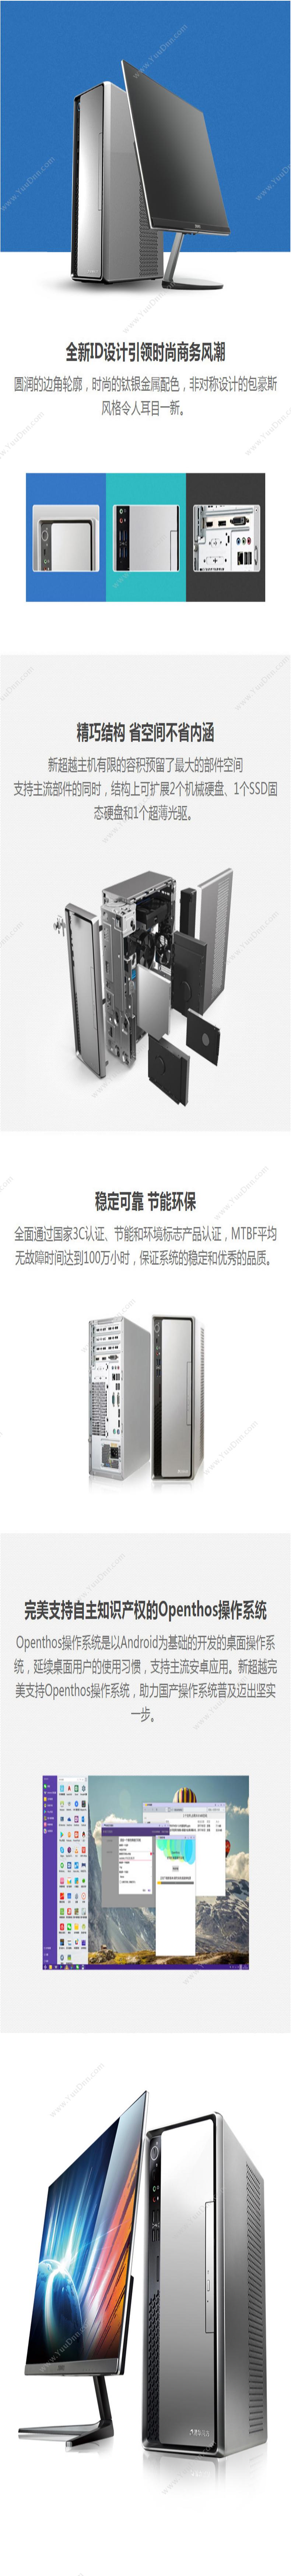 清华同方 TongFang 超扬A3500-0010(19.5寸显示器） 台式机 台式电脑套机